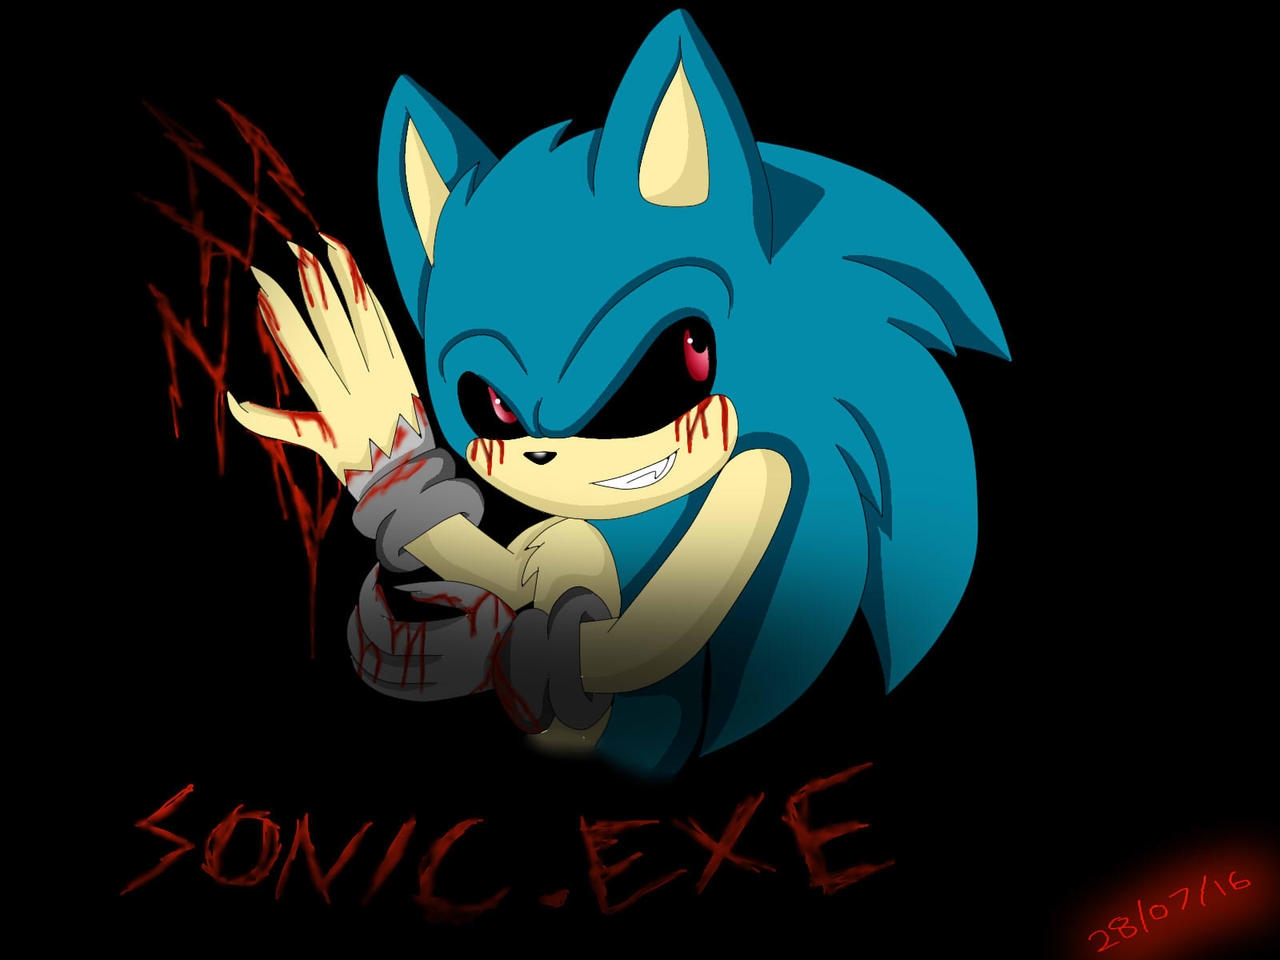 Sonic exe all exes. Соник ехе. Соник exe. Соника ехе.